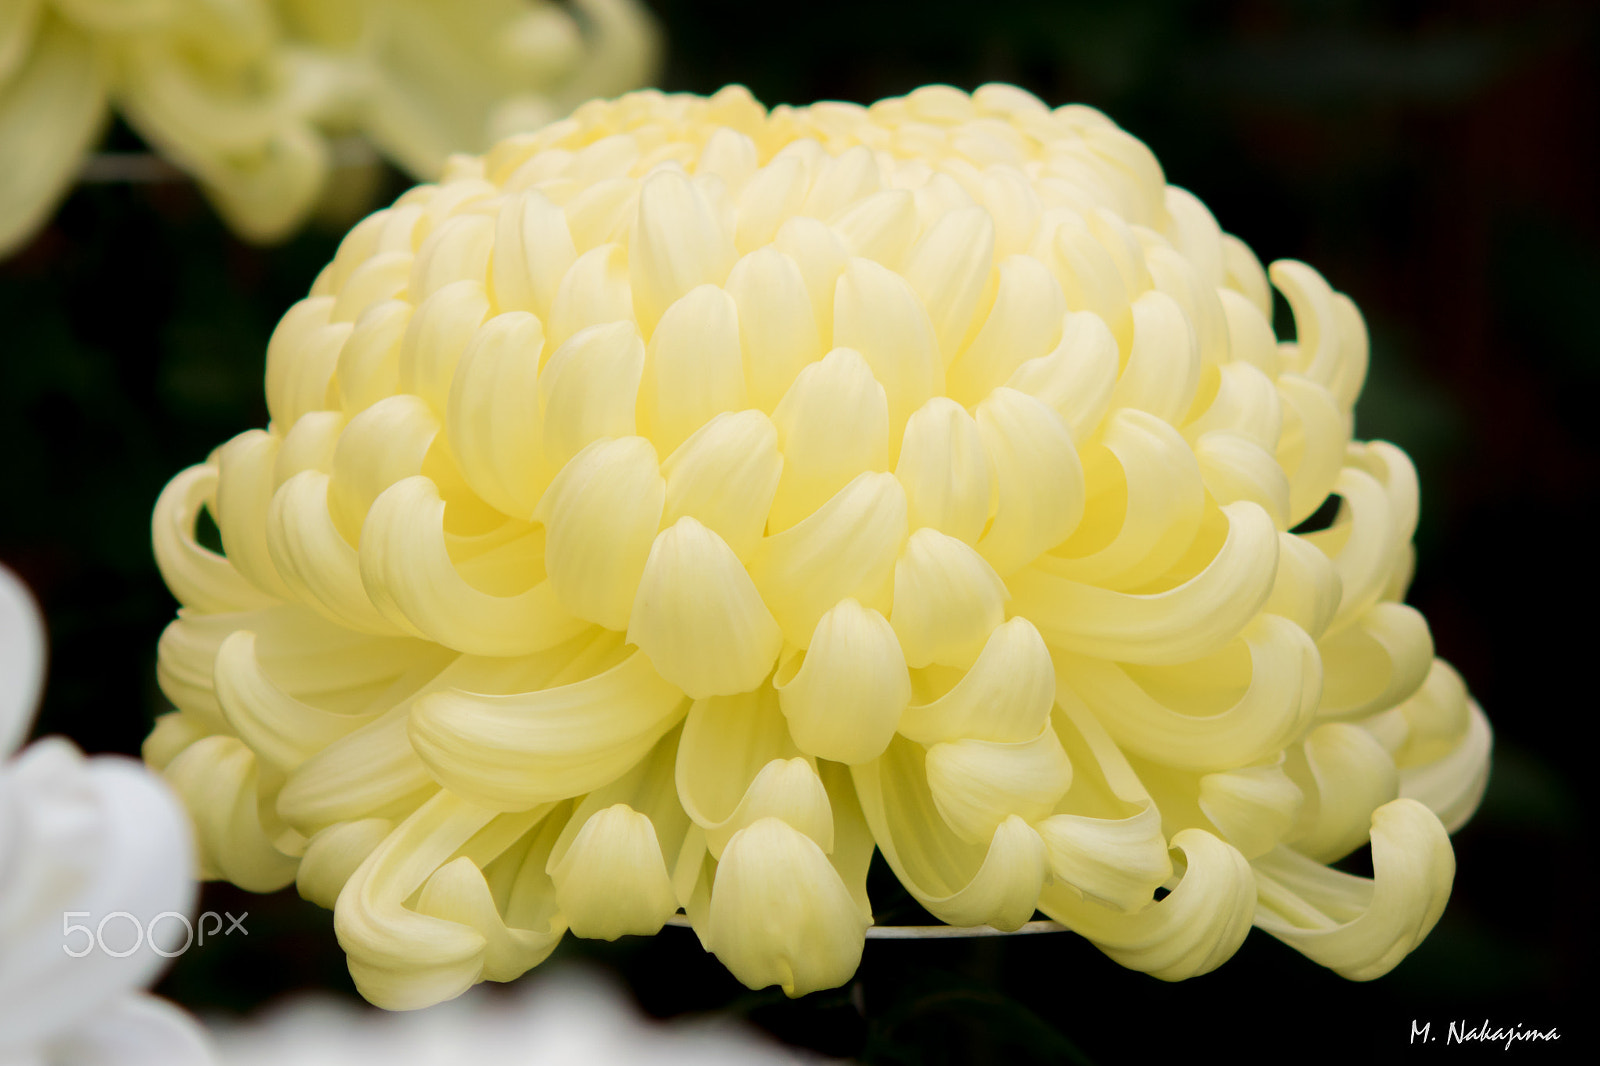 Nikon 1 V3 sample photo. Chrysanthemum -3 photography